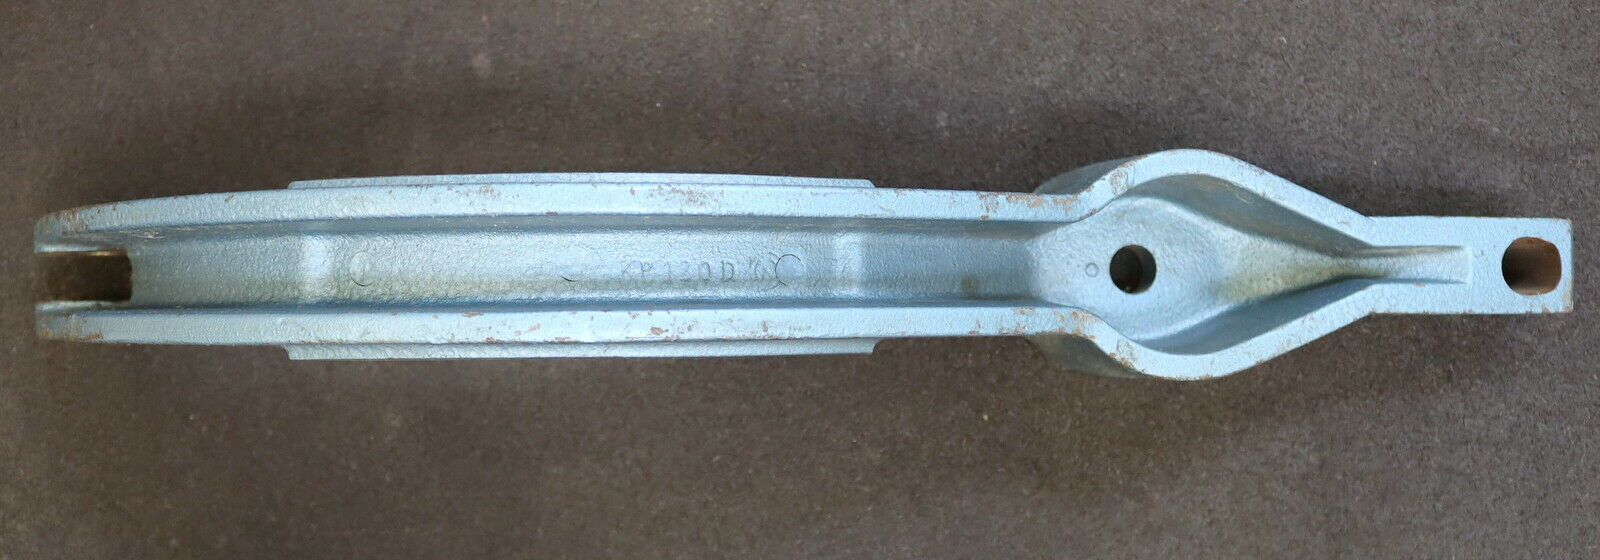 SCHMIDT AUFZUG Bremsbügel für SCHMIDT AUFZUG Nr. 68 Typ KF 130M Art.Nr. 20788